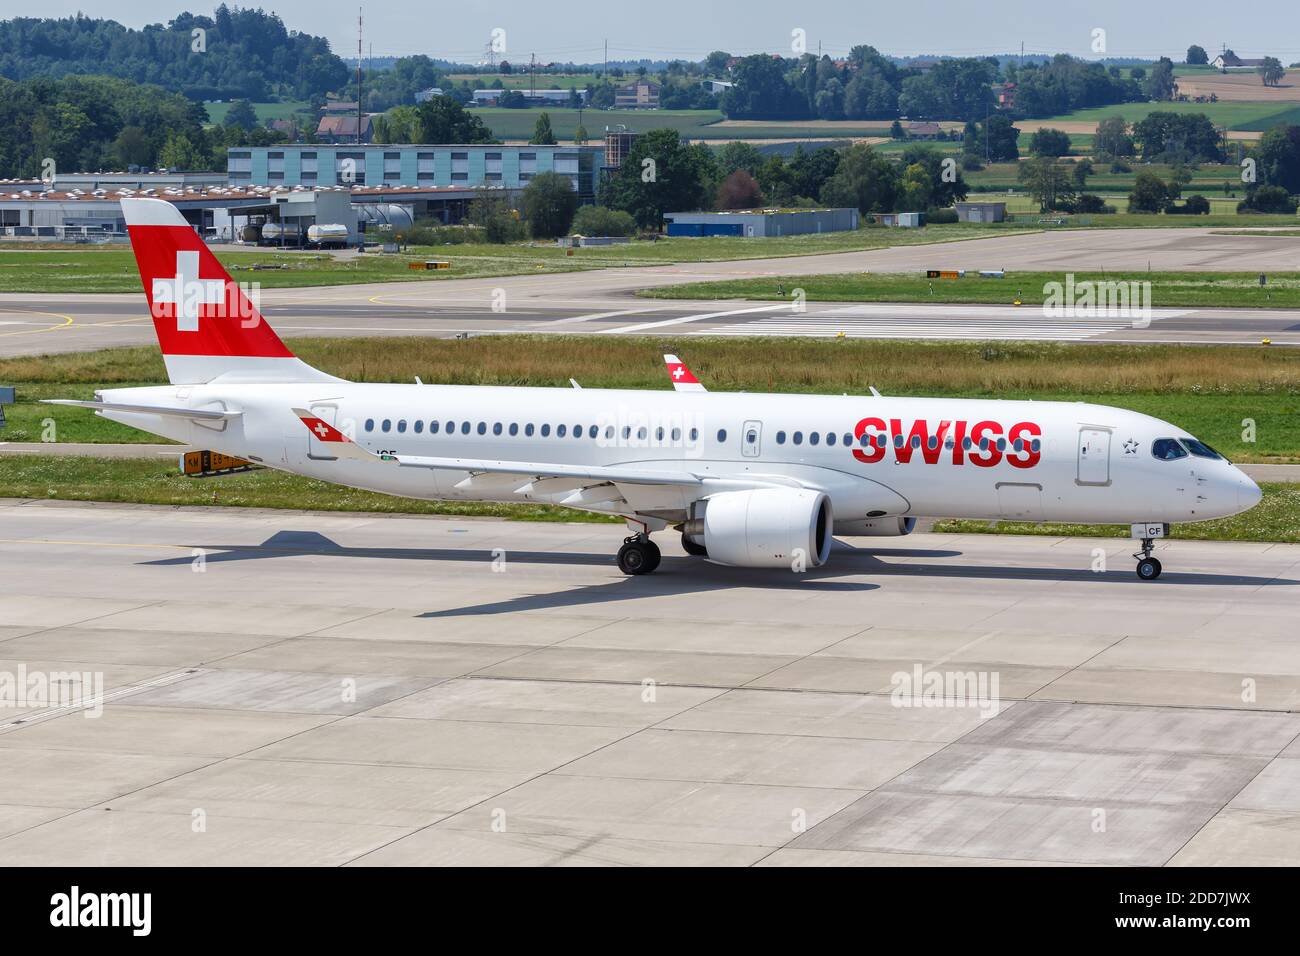 Zurich, Switzerland - July 22, 2020: Swiss Airbus A220-300 airplane at Zurich Airport in Switzerland. Stock Photo